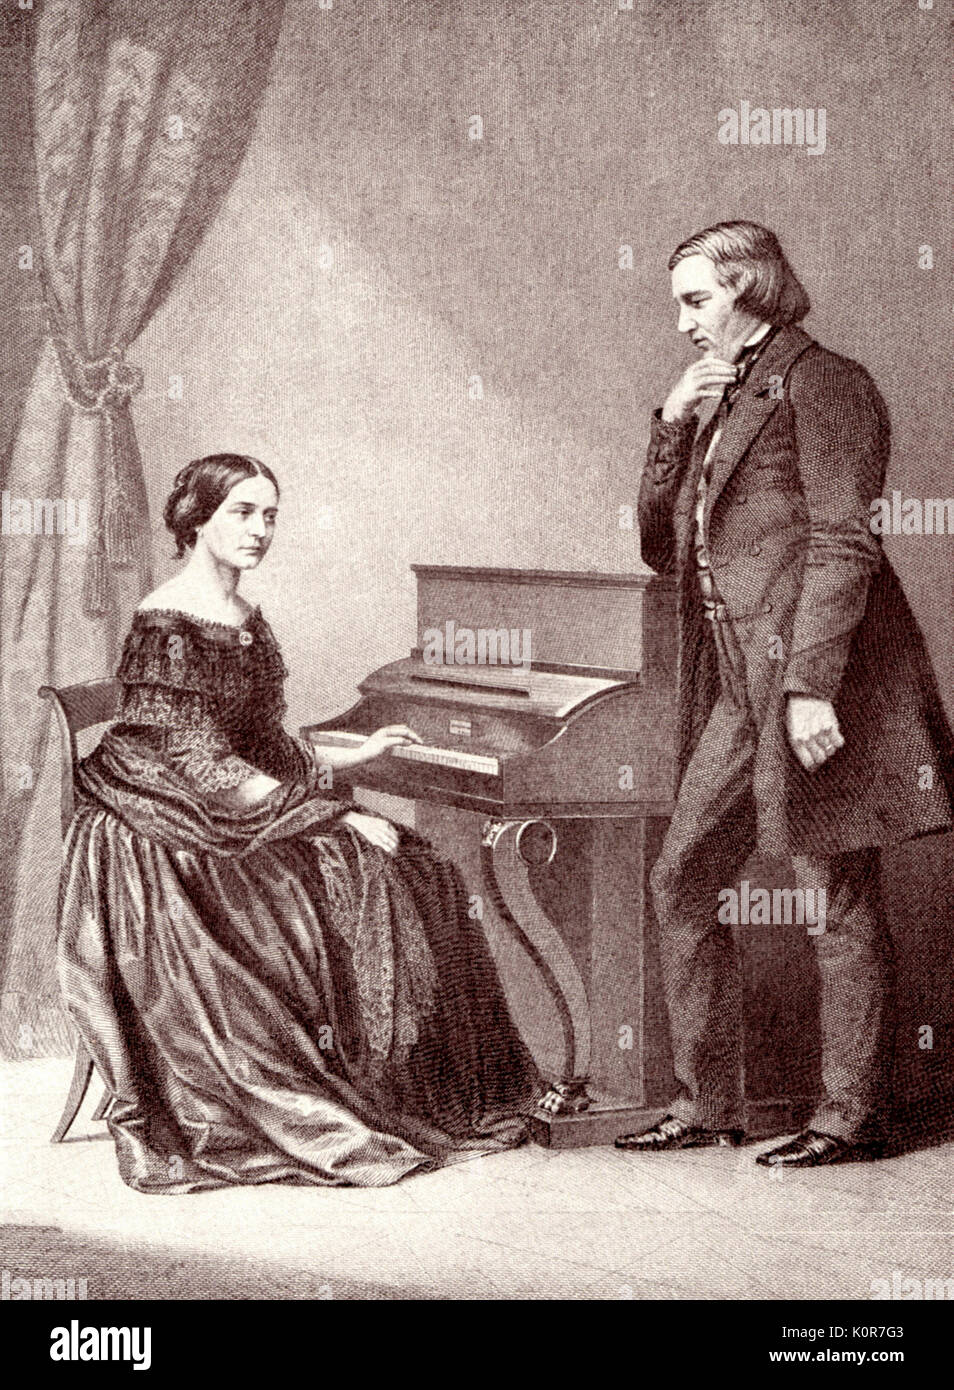 Robert und Clara Schumann, 1850, Hamburg. Nach der Daguerreotypie. Clara Schumann: deutsche Pianist und Komponist 1819-1896, verheiratet mit Robert Schumann, Deutscher Komponist, 1810-1856. Stockfoto